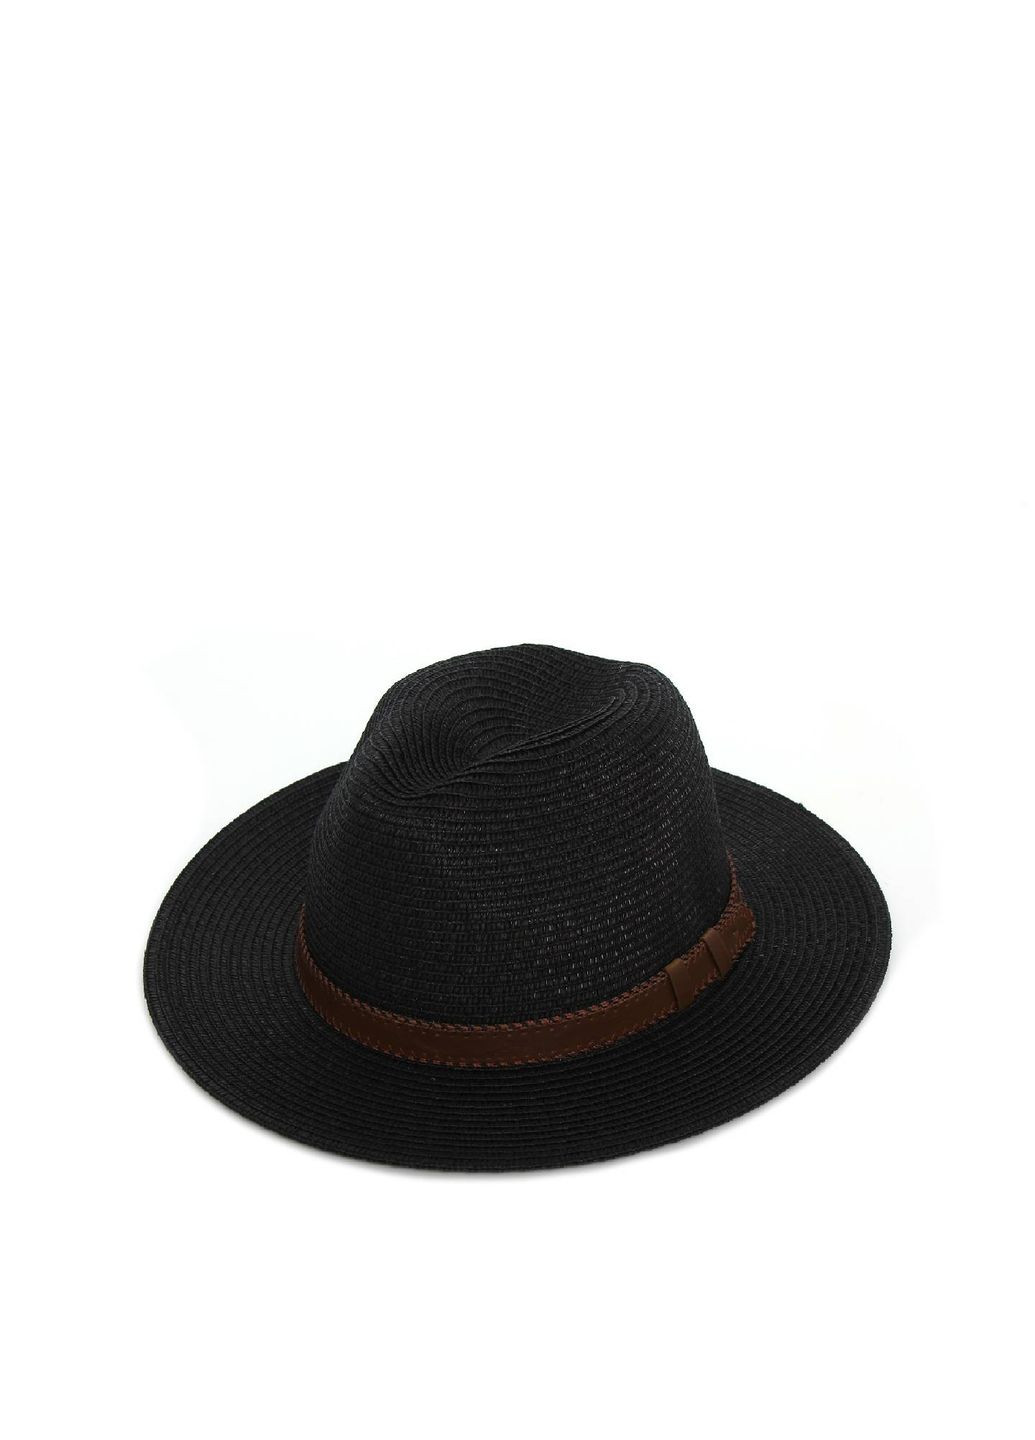 Шляпа федора мужская бумага черная BAY 376-053 LuckyLOOK 376-053м (289478379)